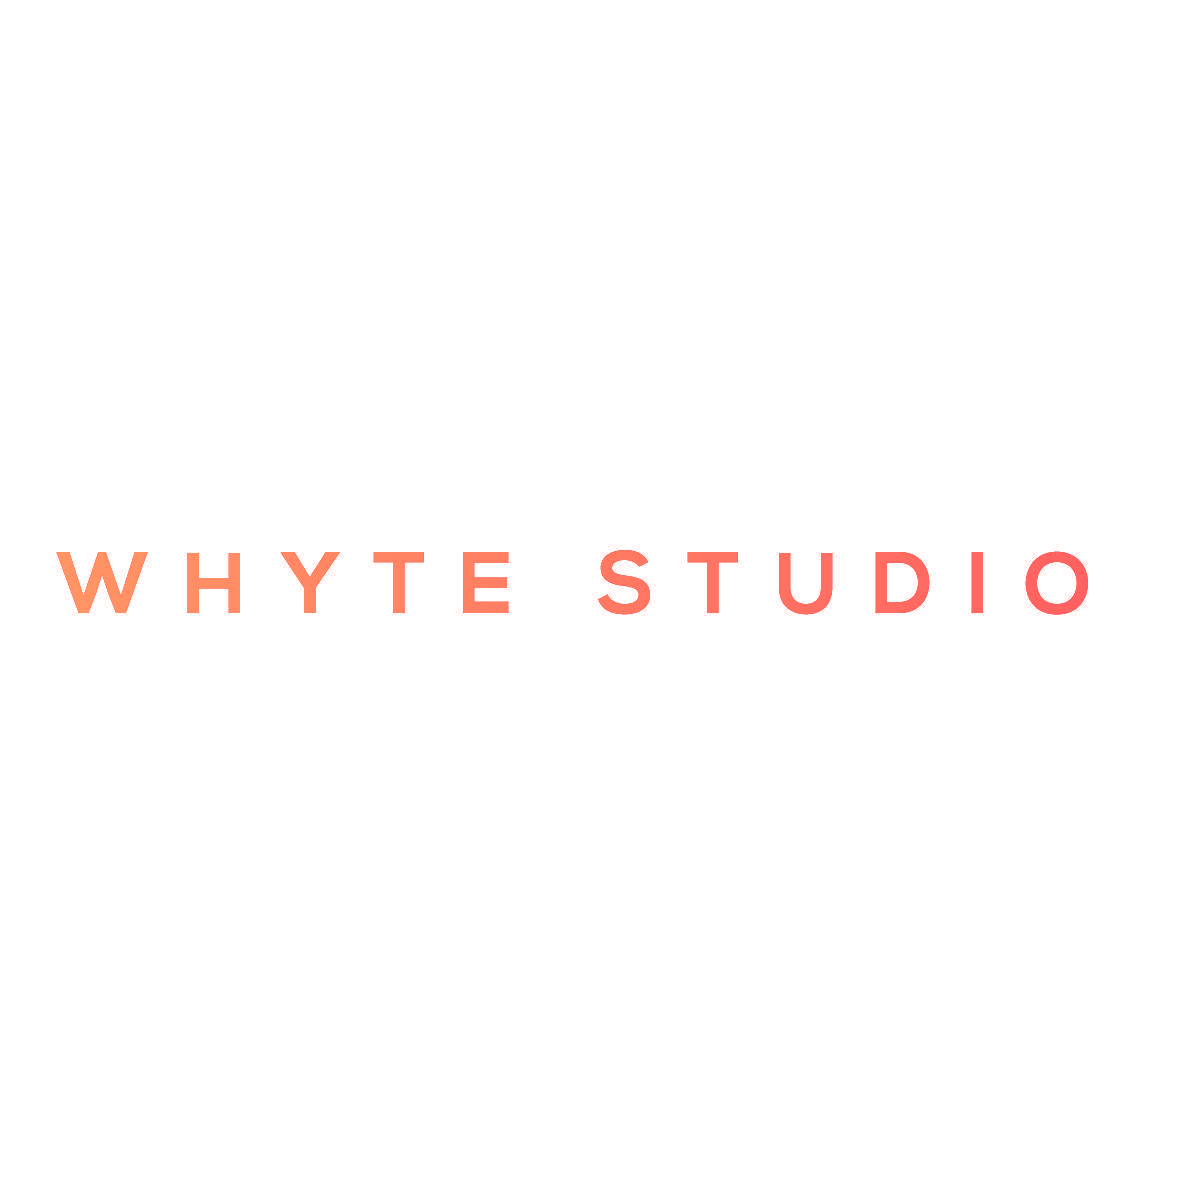 WHYTE STUDIO